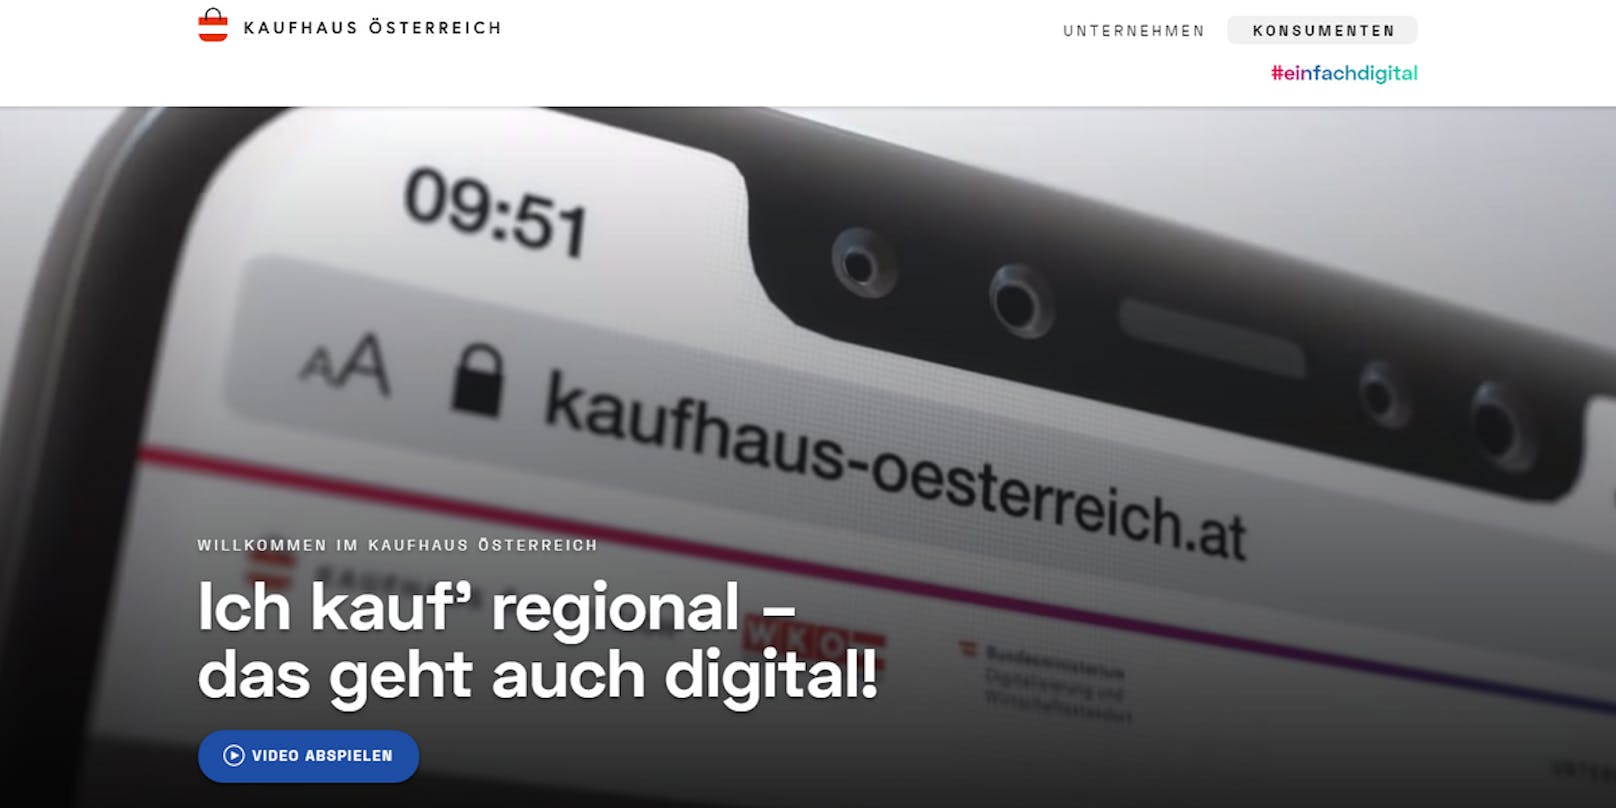 Die neue Internet-Plattform soll österreichische Produkte bekannter machen.